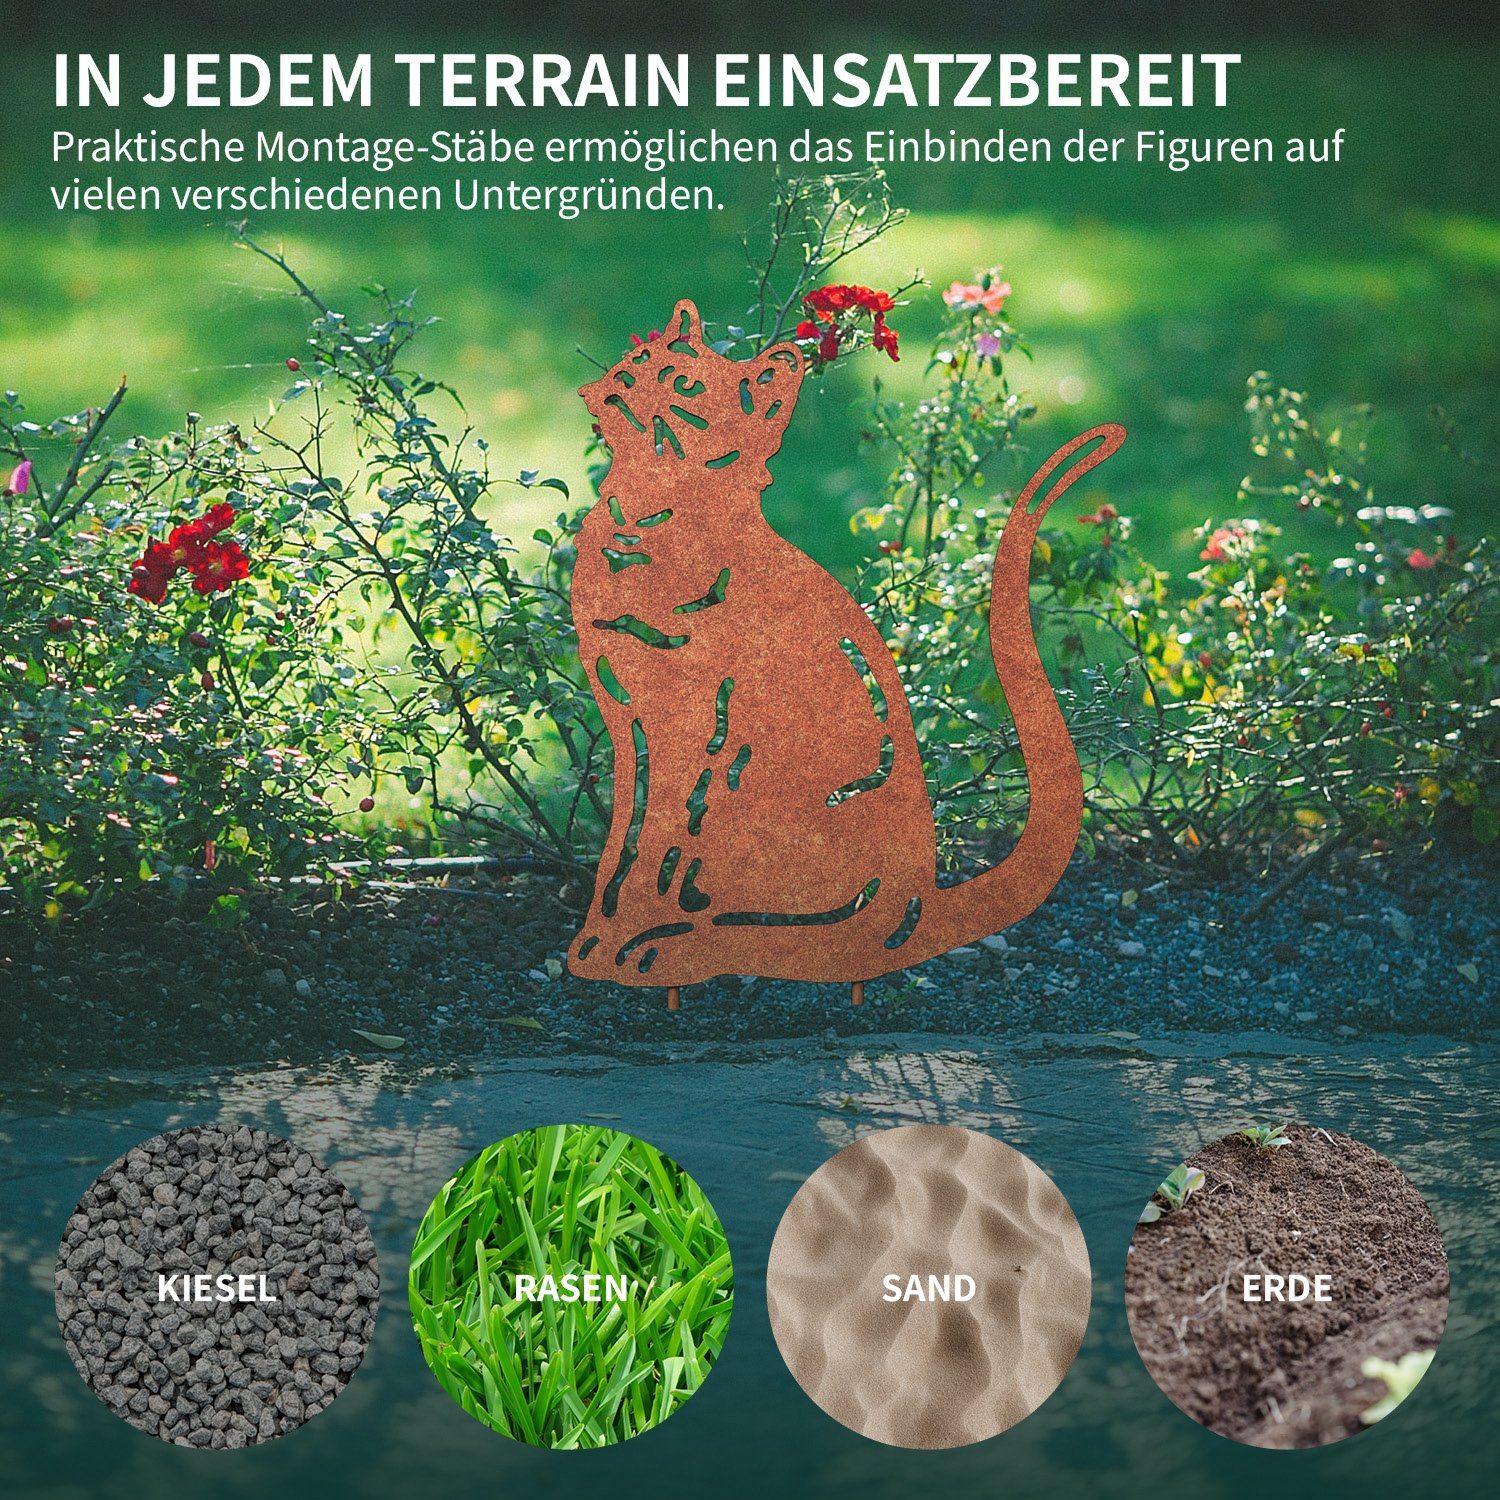 VERDOBA Gartenstecker Gartenfigur Katze in Rost, (silber) Designs verschiedenen Blumenstecker